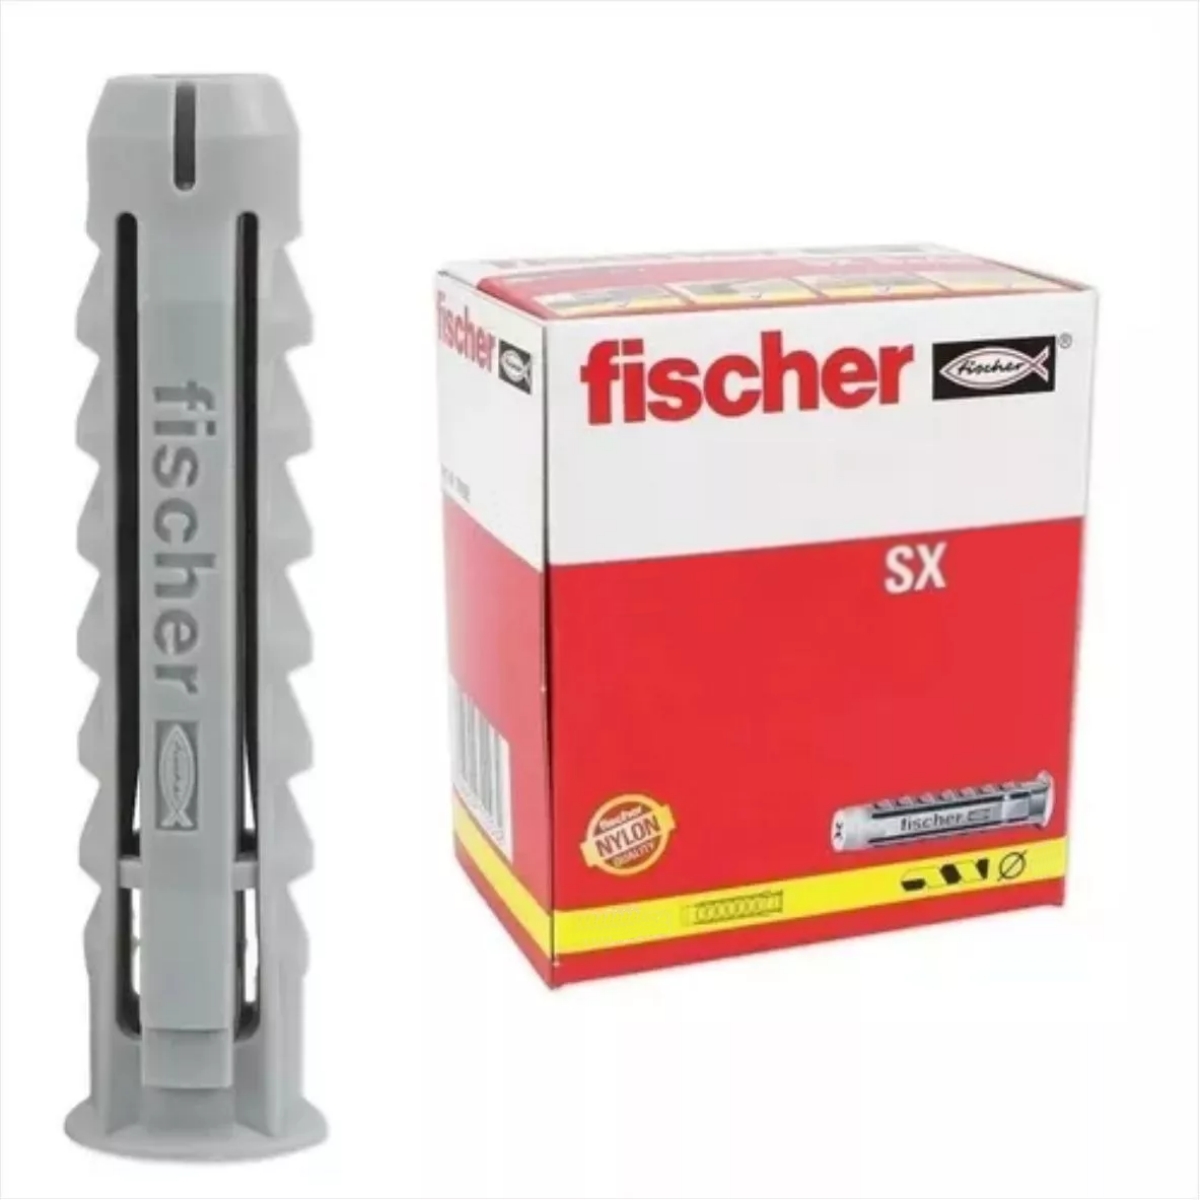 Tarugo SX 10 mm. x 400 Un. Fischer